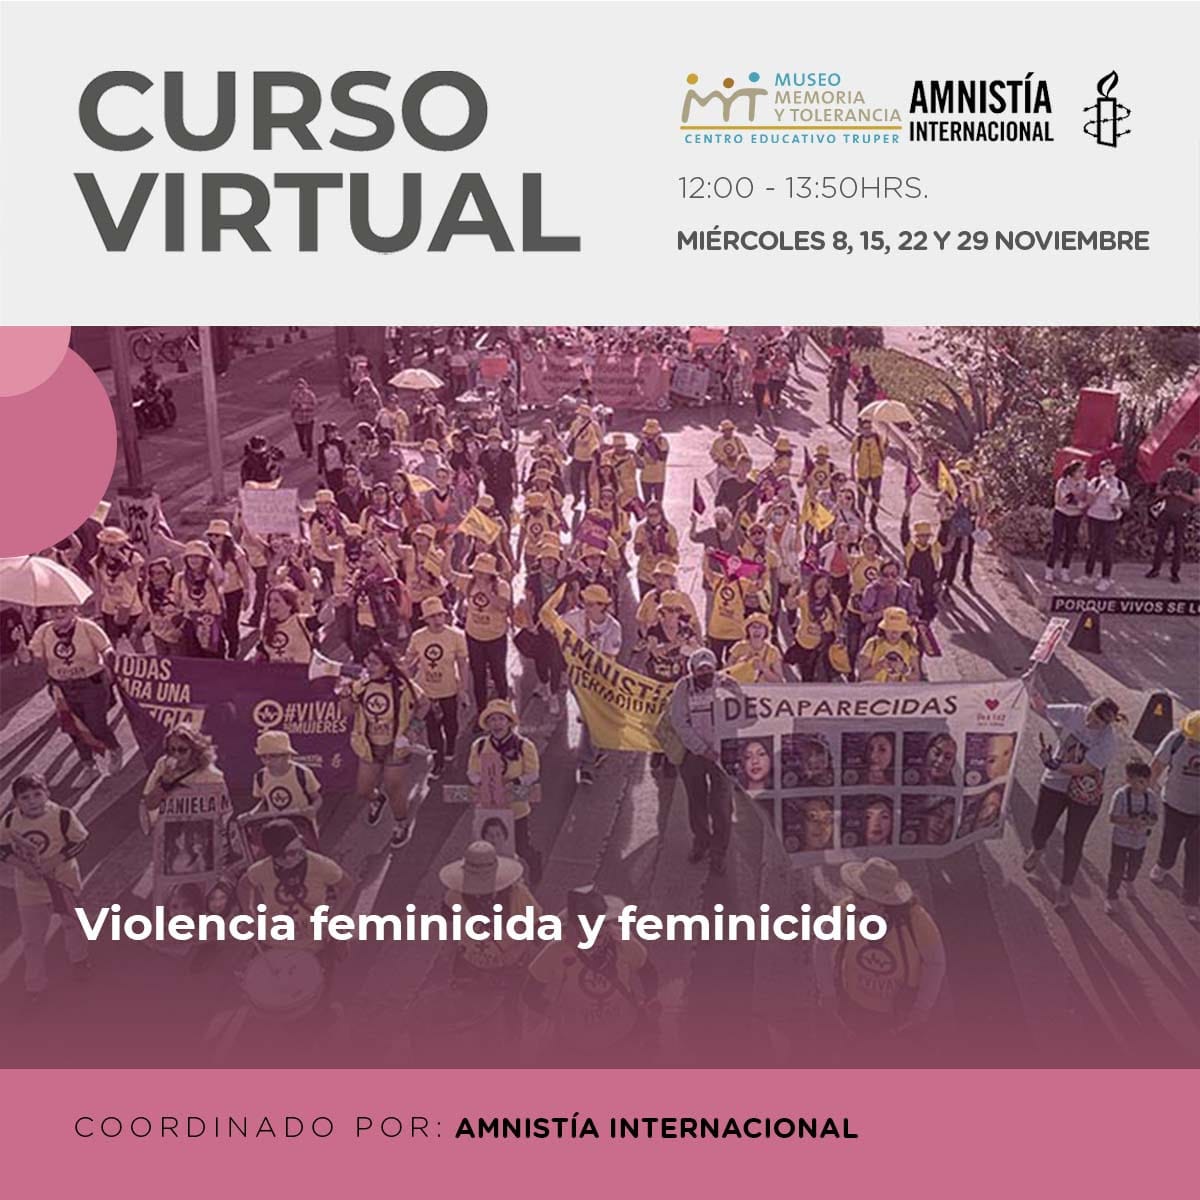 En este #CursoGratuito📚, organizado en colaboración con el @MuseoMyT, conocerás qué es la violencia feminicida y el feminicidio desde un enfoque de derechos humanos. 🗓 Todos los miércoles de noviembre ⏰ de 12:00 a 13:50 hrs. 💻 Vía Zoom 🔗 Registro: amn.st/6015uq1pF